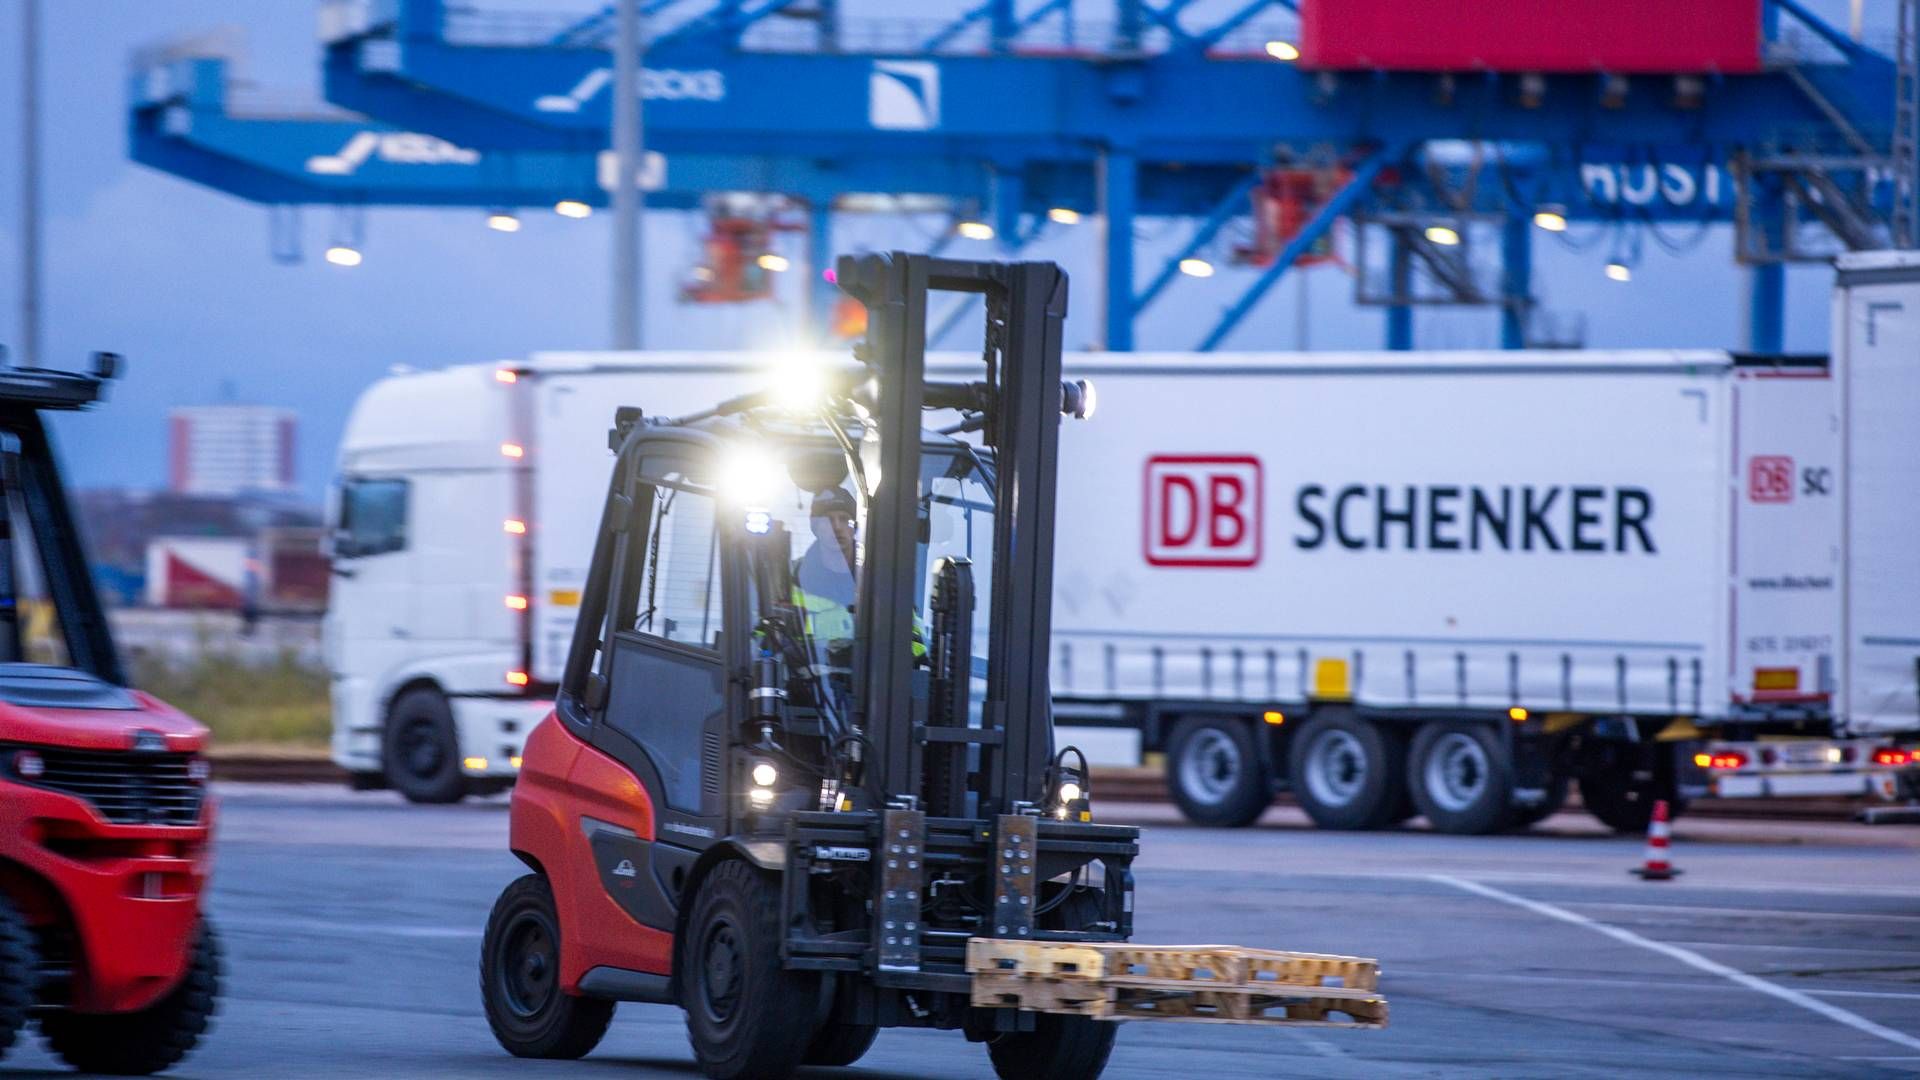 ”Vi mener stadig, at DSV er i en gunstig position til at købe DB Schenker på grund af deres resultater og betydelige synergieffekter i tidligere handler sammenlignet med andre logistikselskaber,” konkluderer DNB Markets. | Foto: Jens B'ttner/AP/Ritzau Scanpix